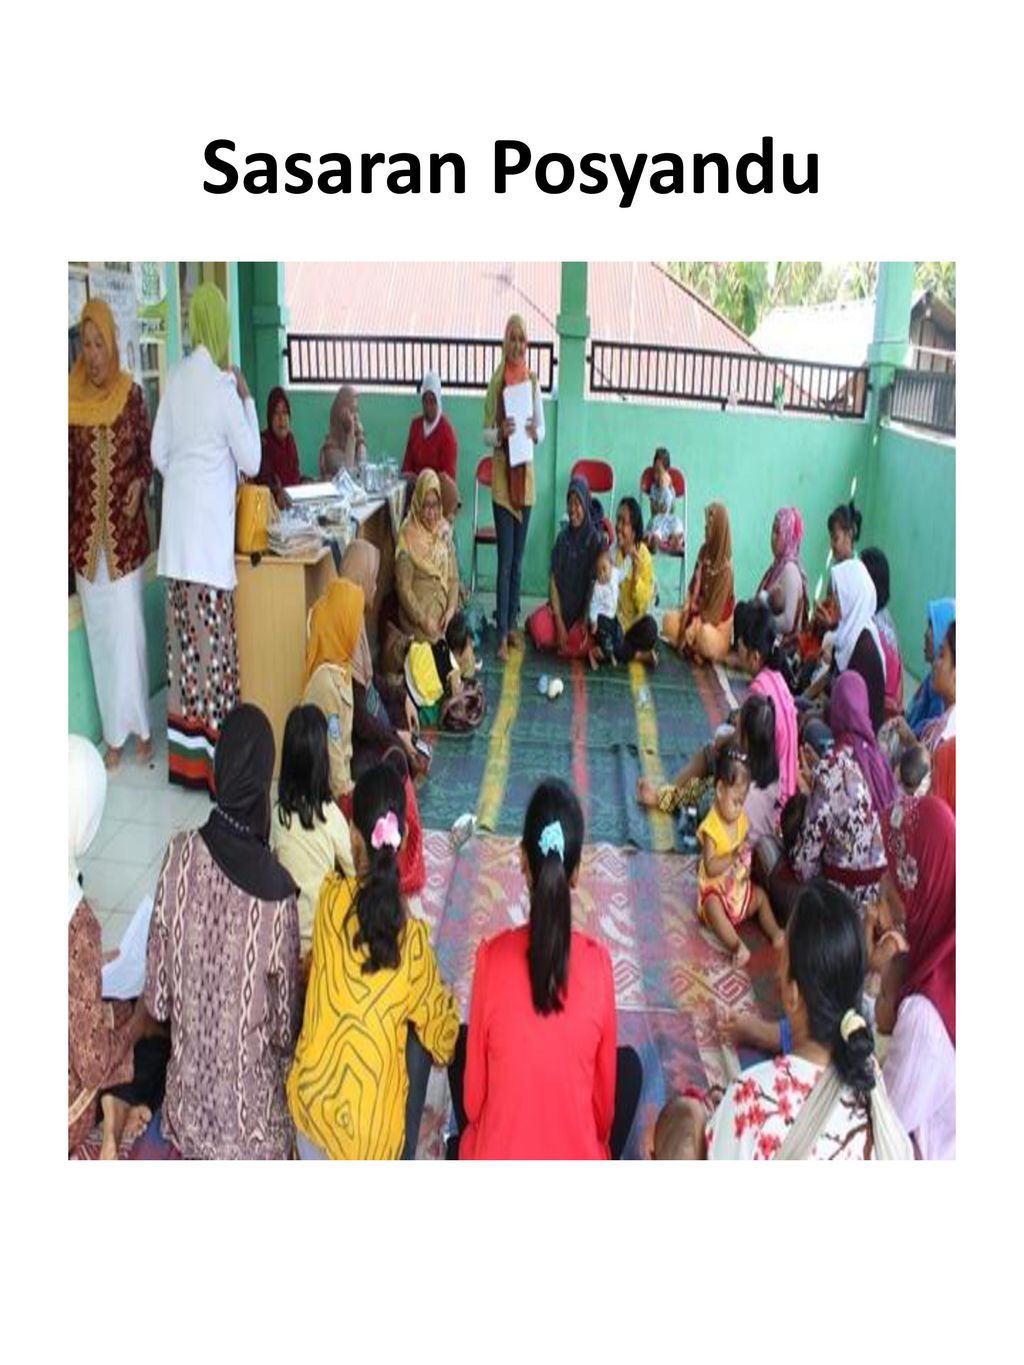 Sasaran Posyandu